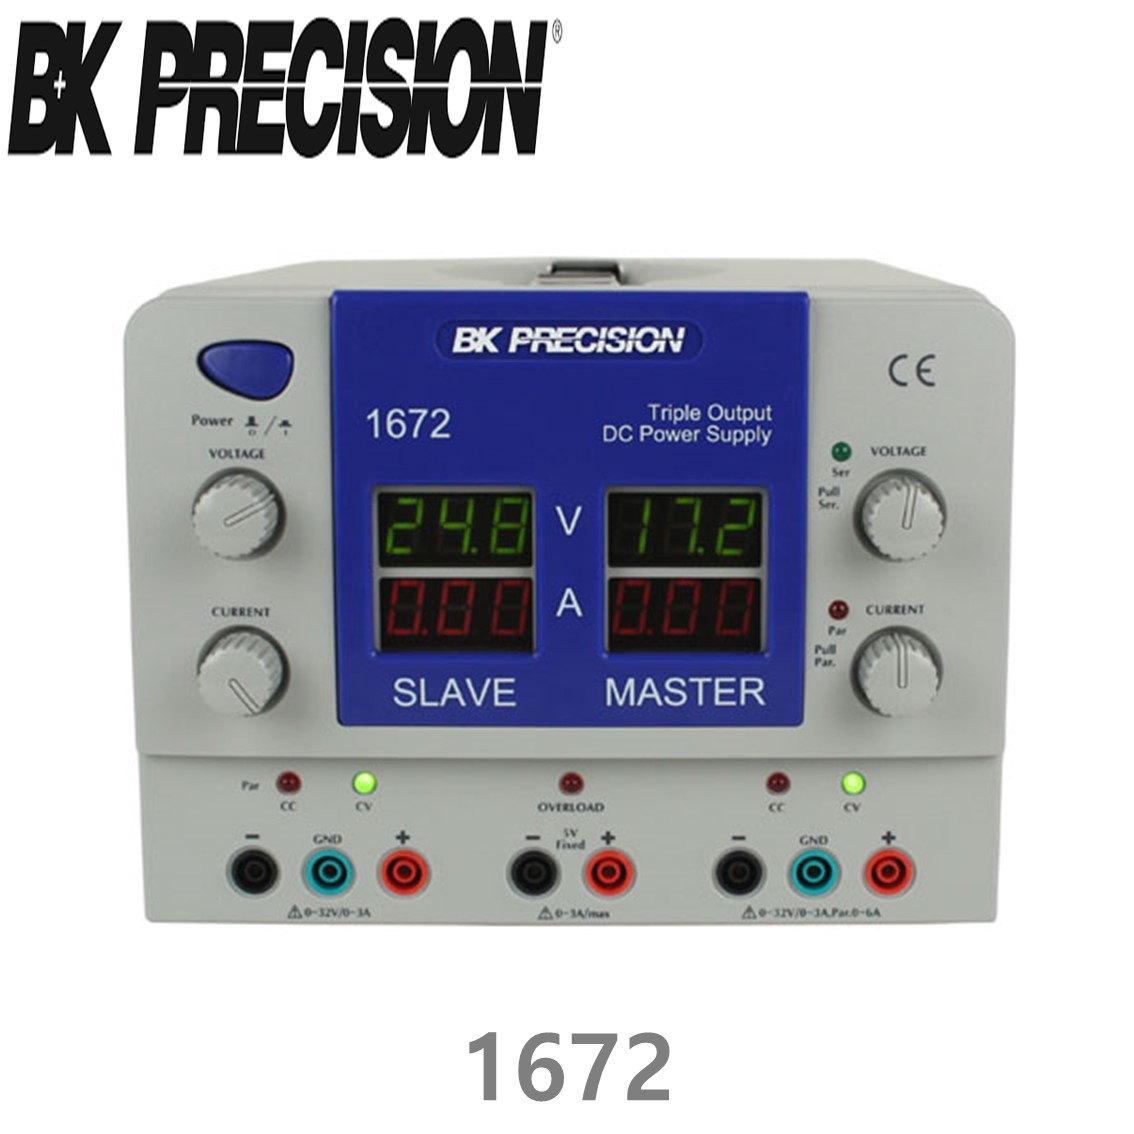 [ BK PRECISION ] BK 1672, 32V/3A x 2채널(가변), 5V/1A x 1채널(고정), Triple OutputDC Power Supply, 3채널 DC 전원공급기, B&K 1672